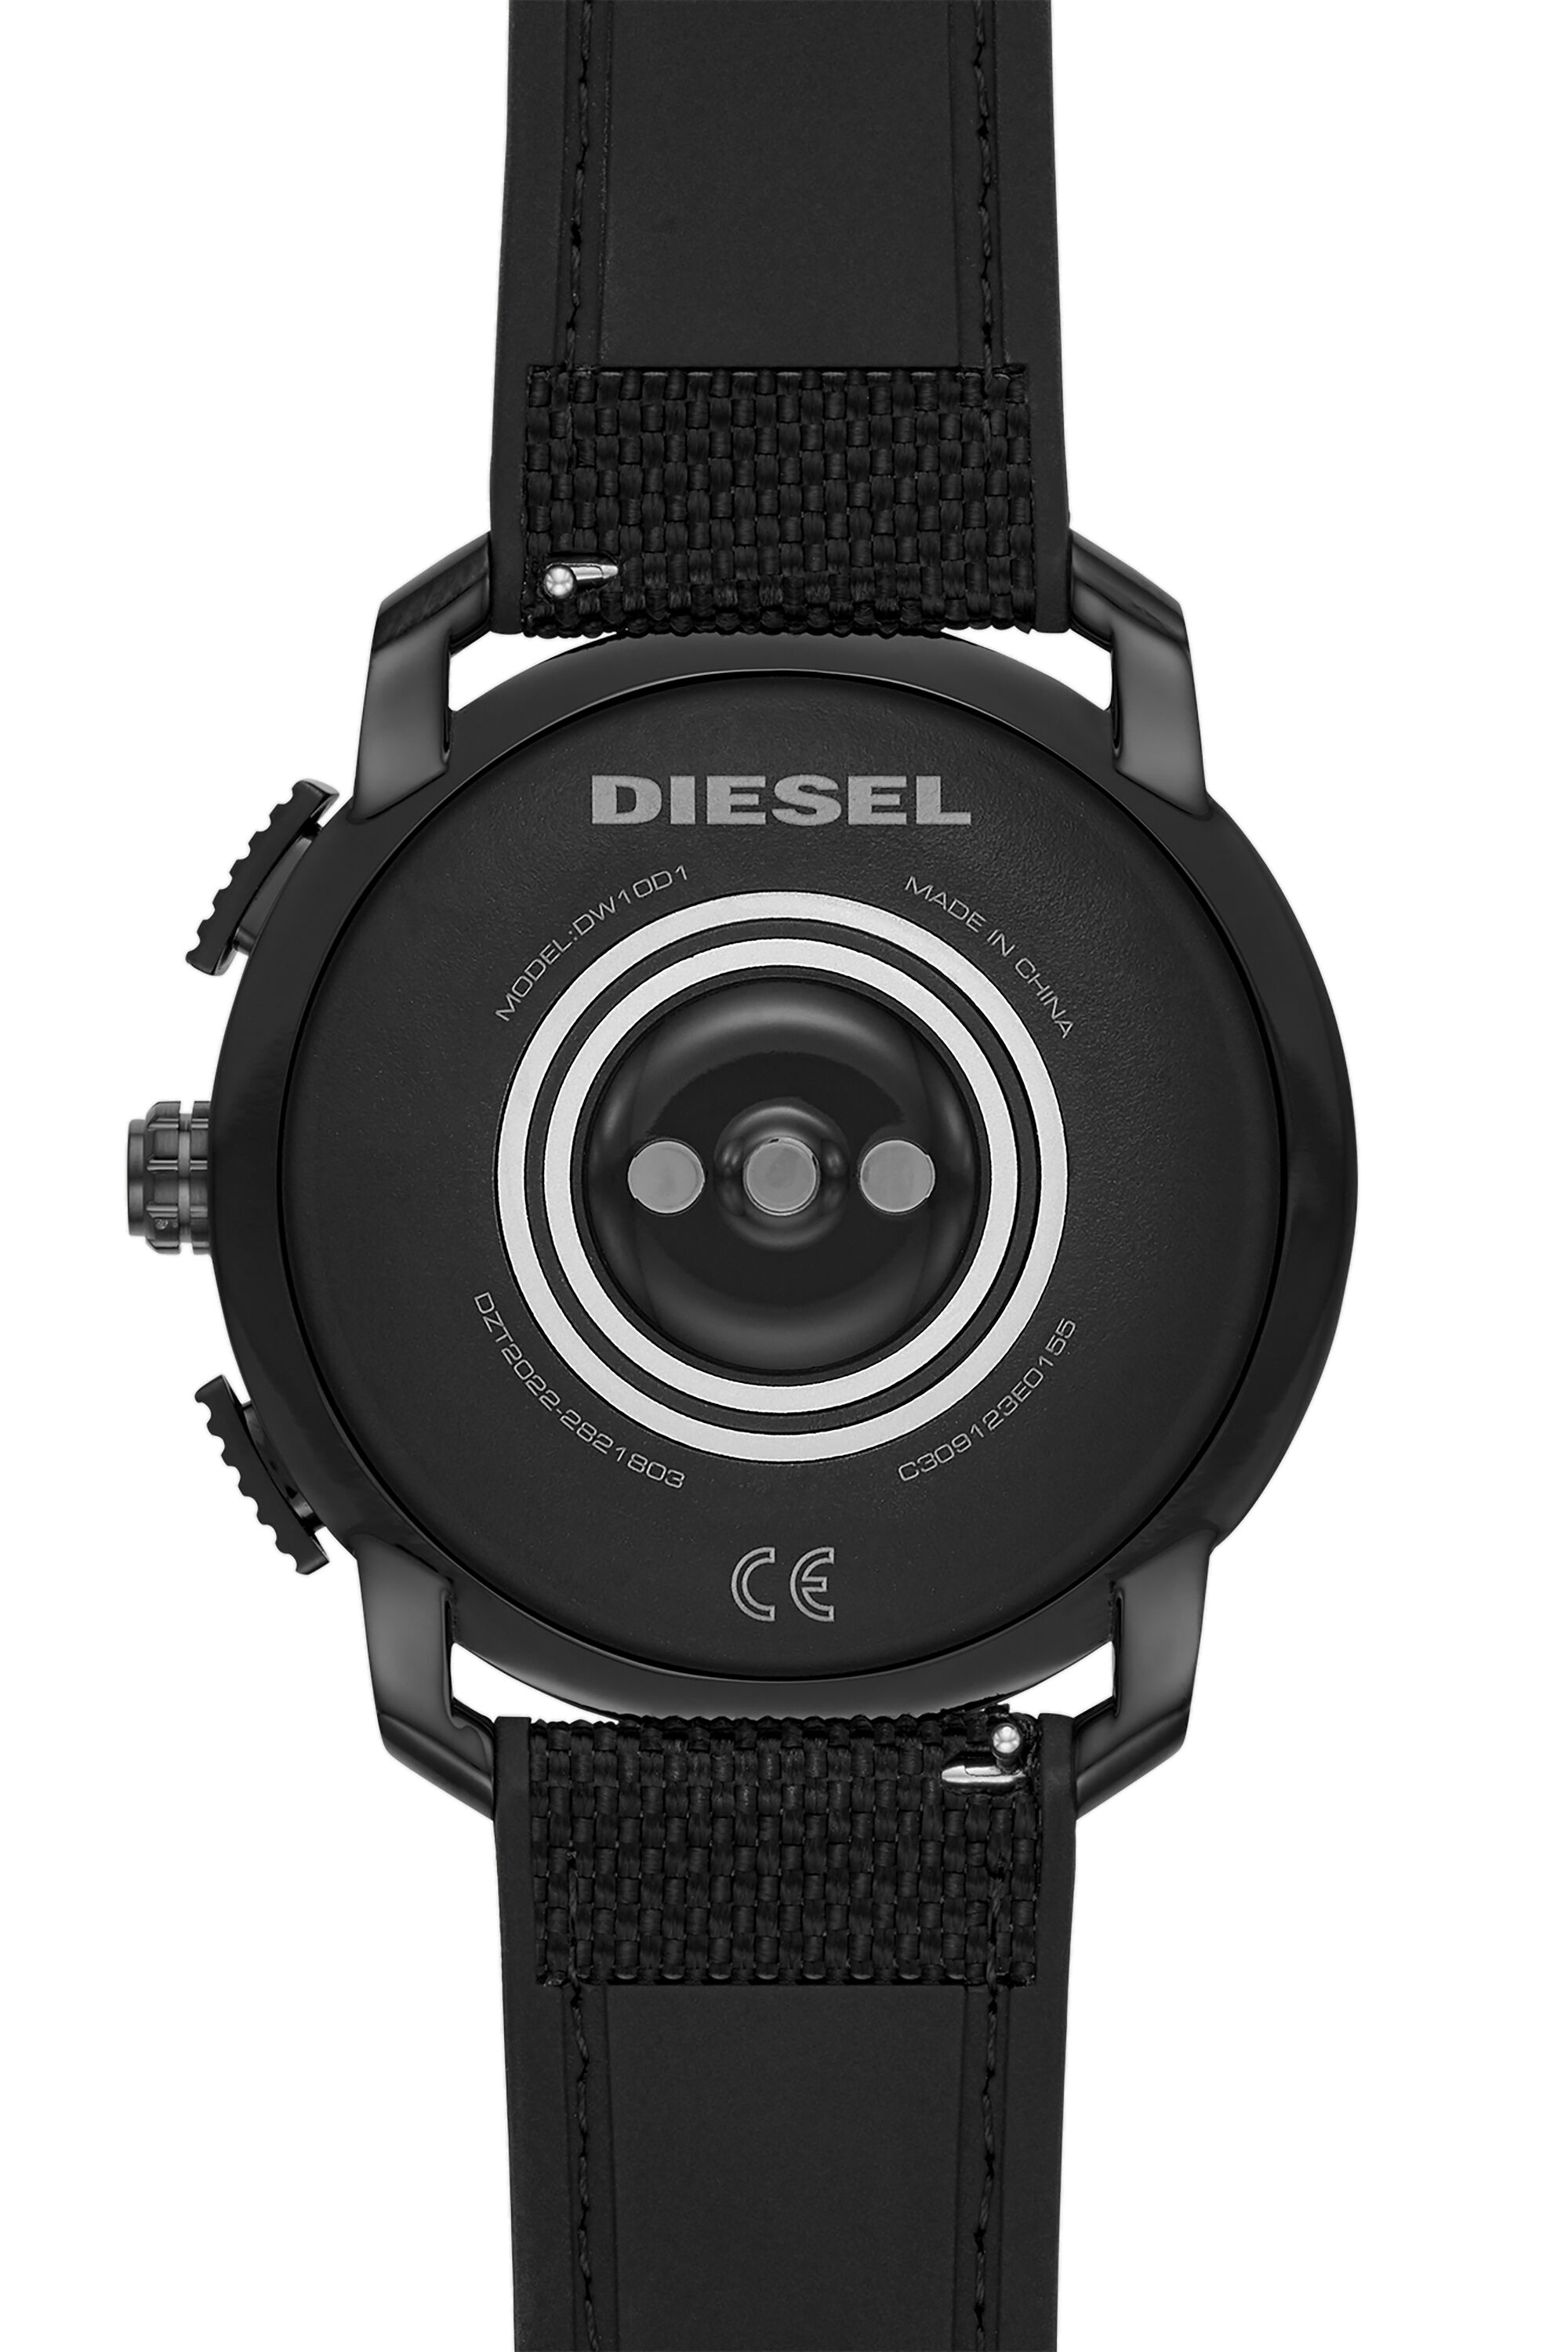 Diesel - DT2022, Schwarz - Image 4